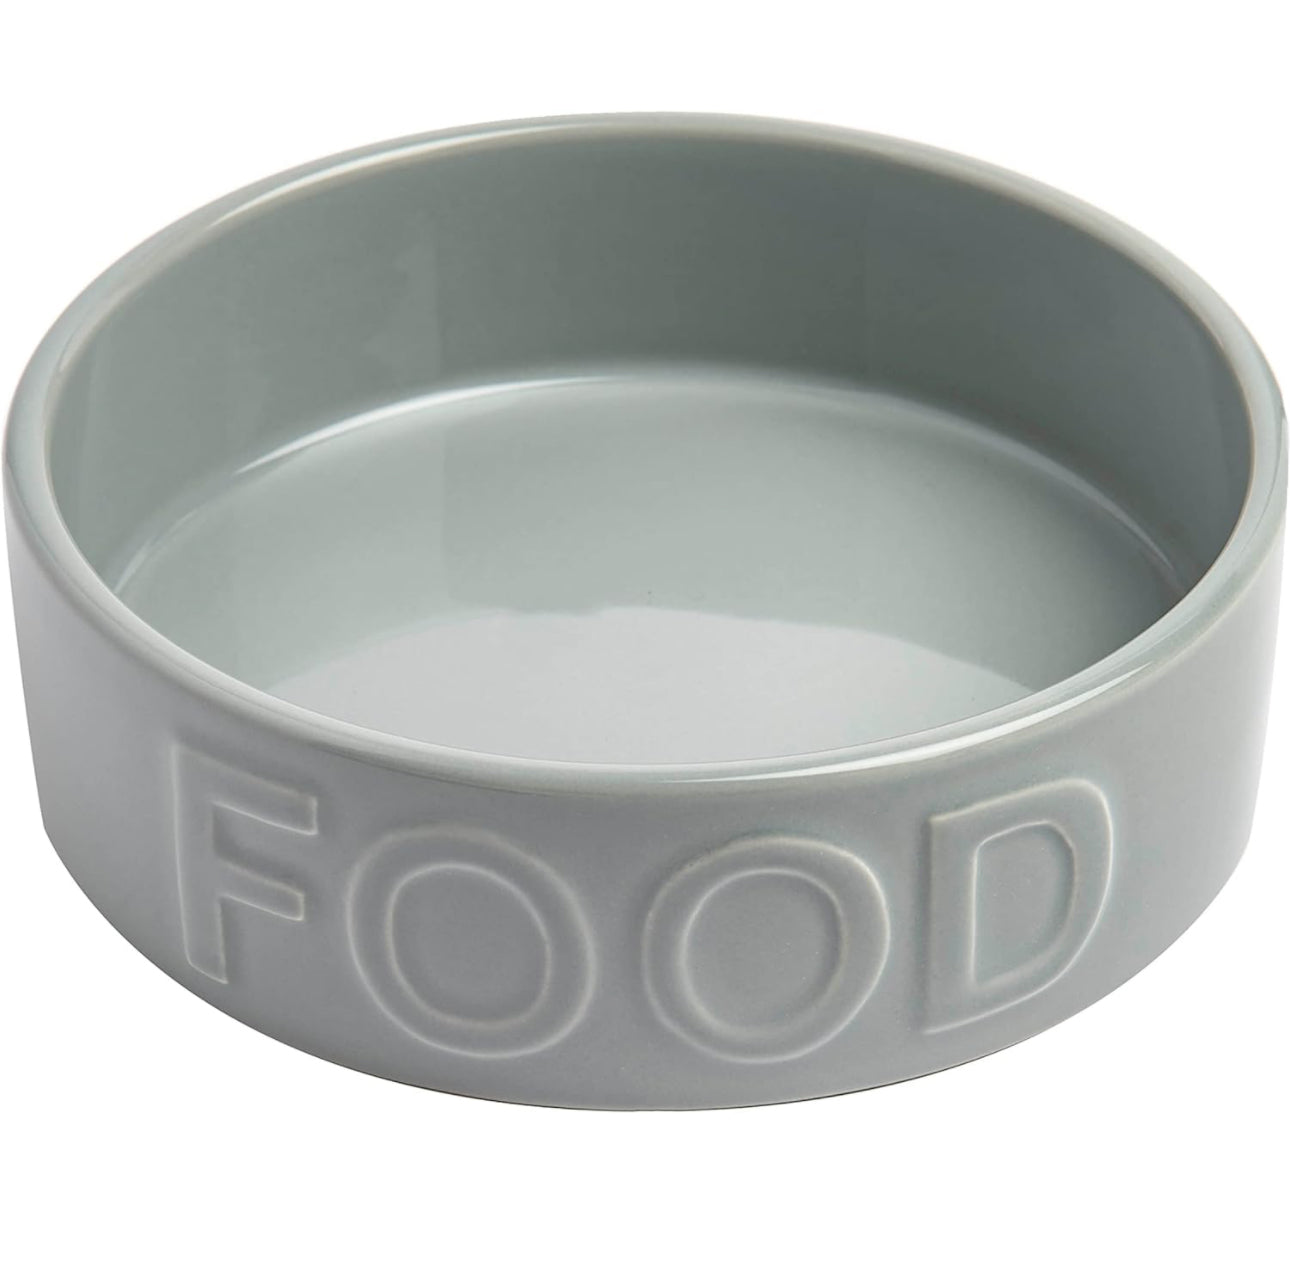 Food & Water Bowls